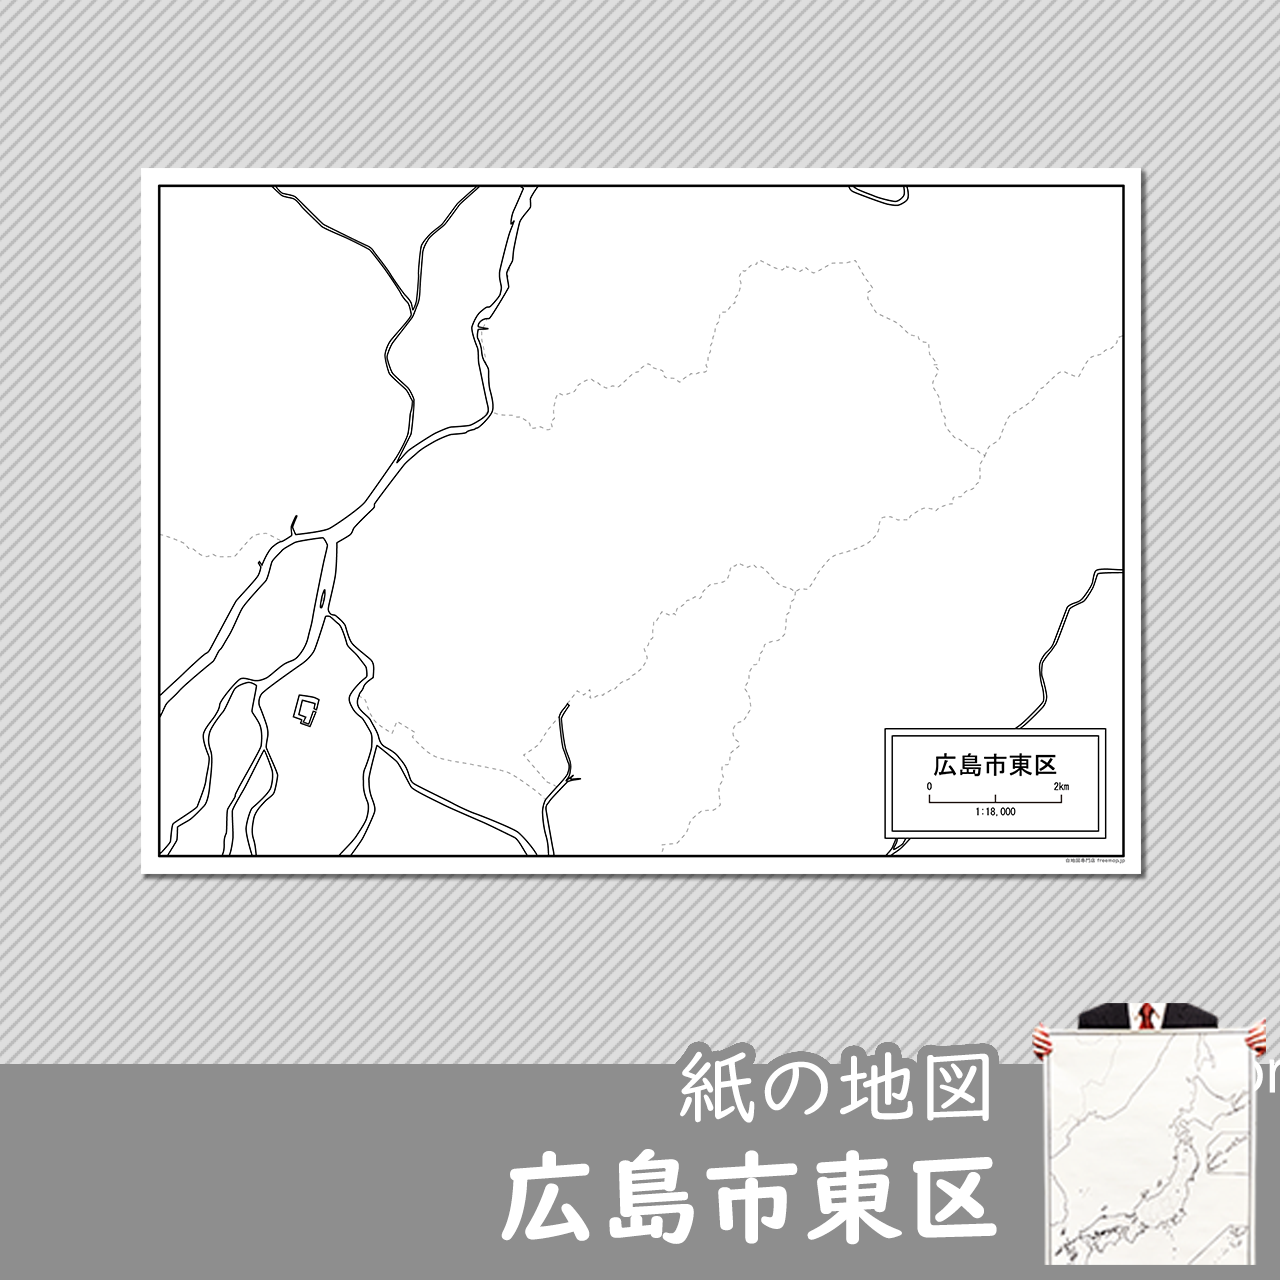 広島市東区の紙の白地図のサムネイル